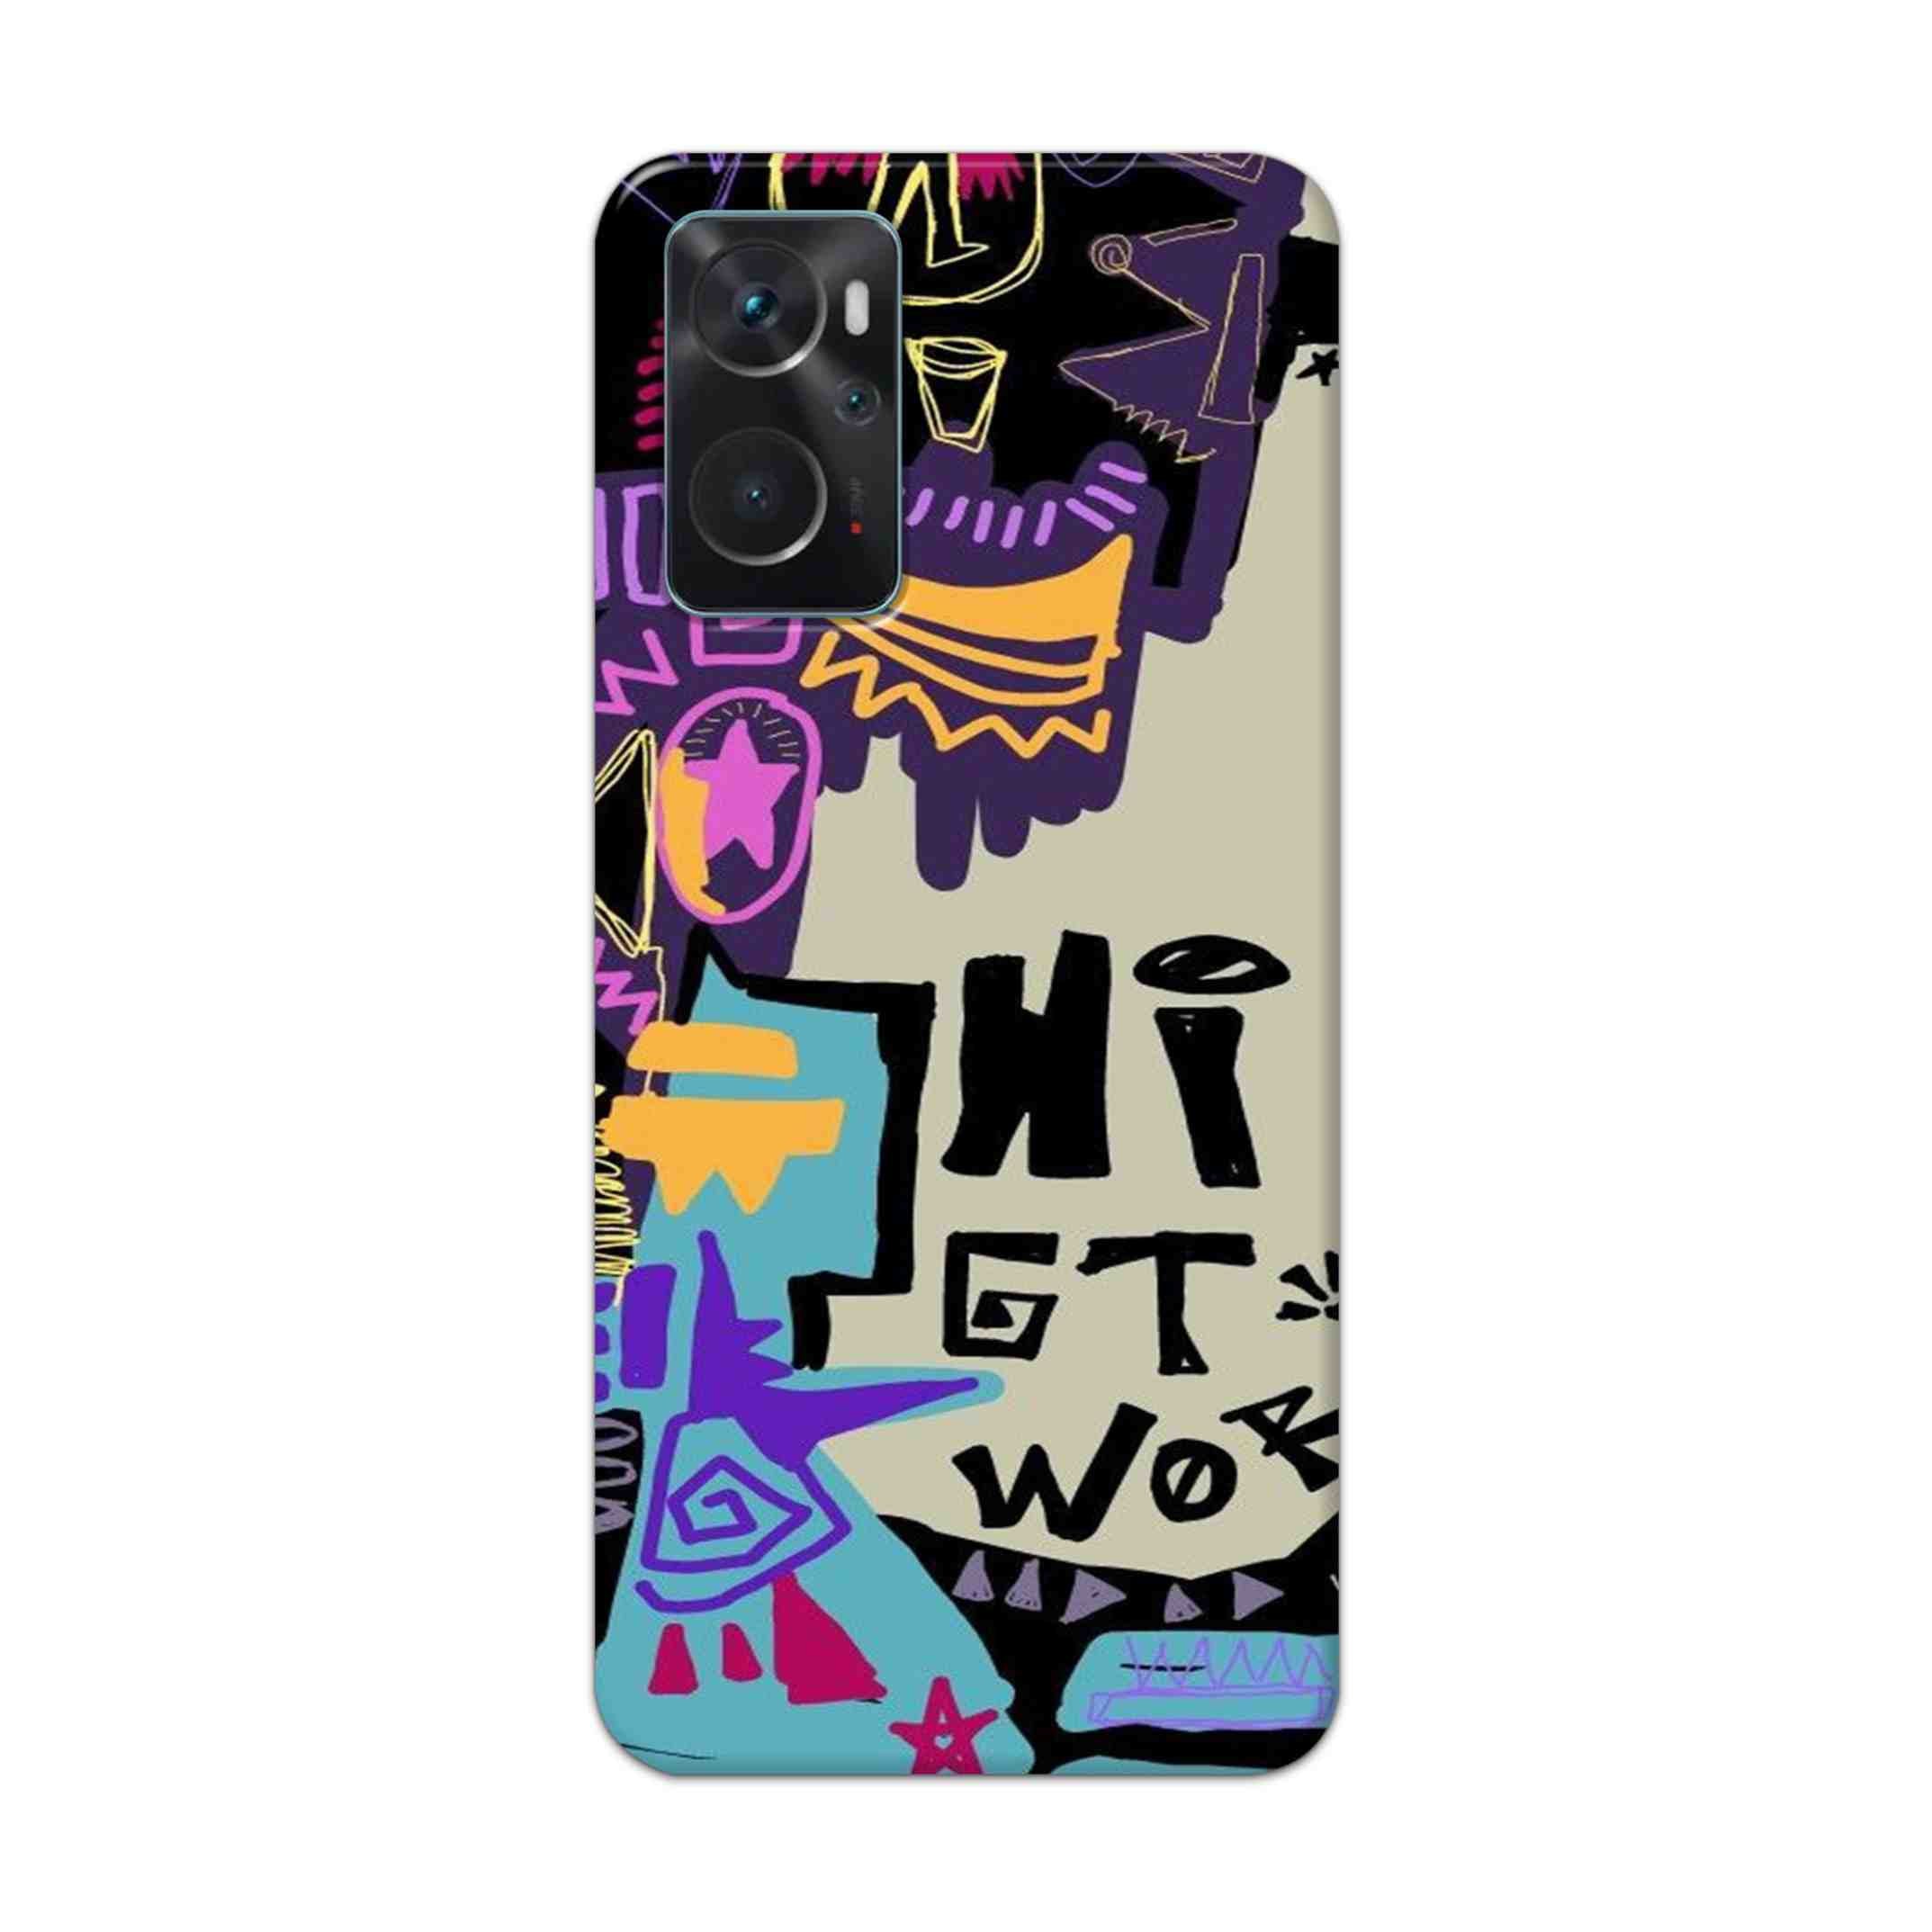 Buy Hi Gt World Hard Back Mobile Phone Case Cover For Oppo K10 Online